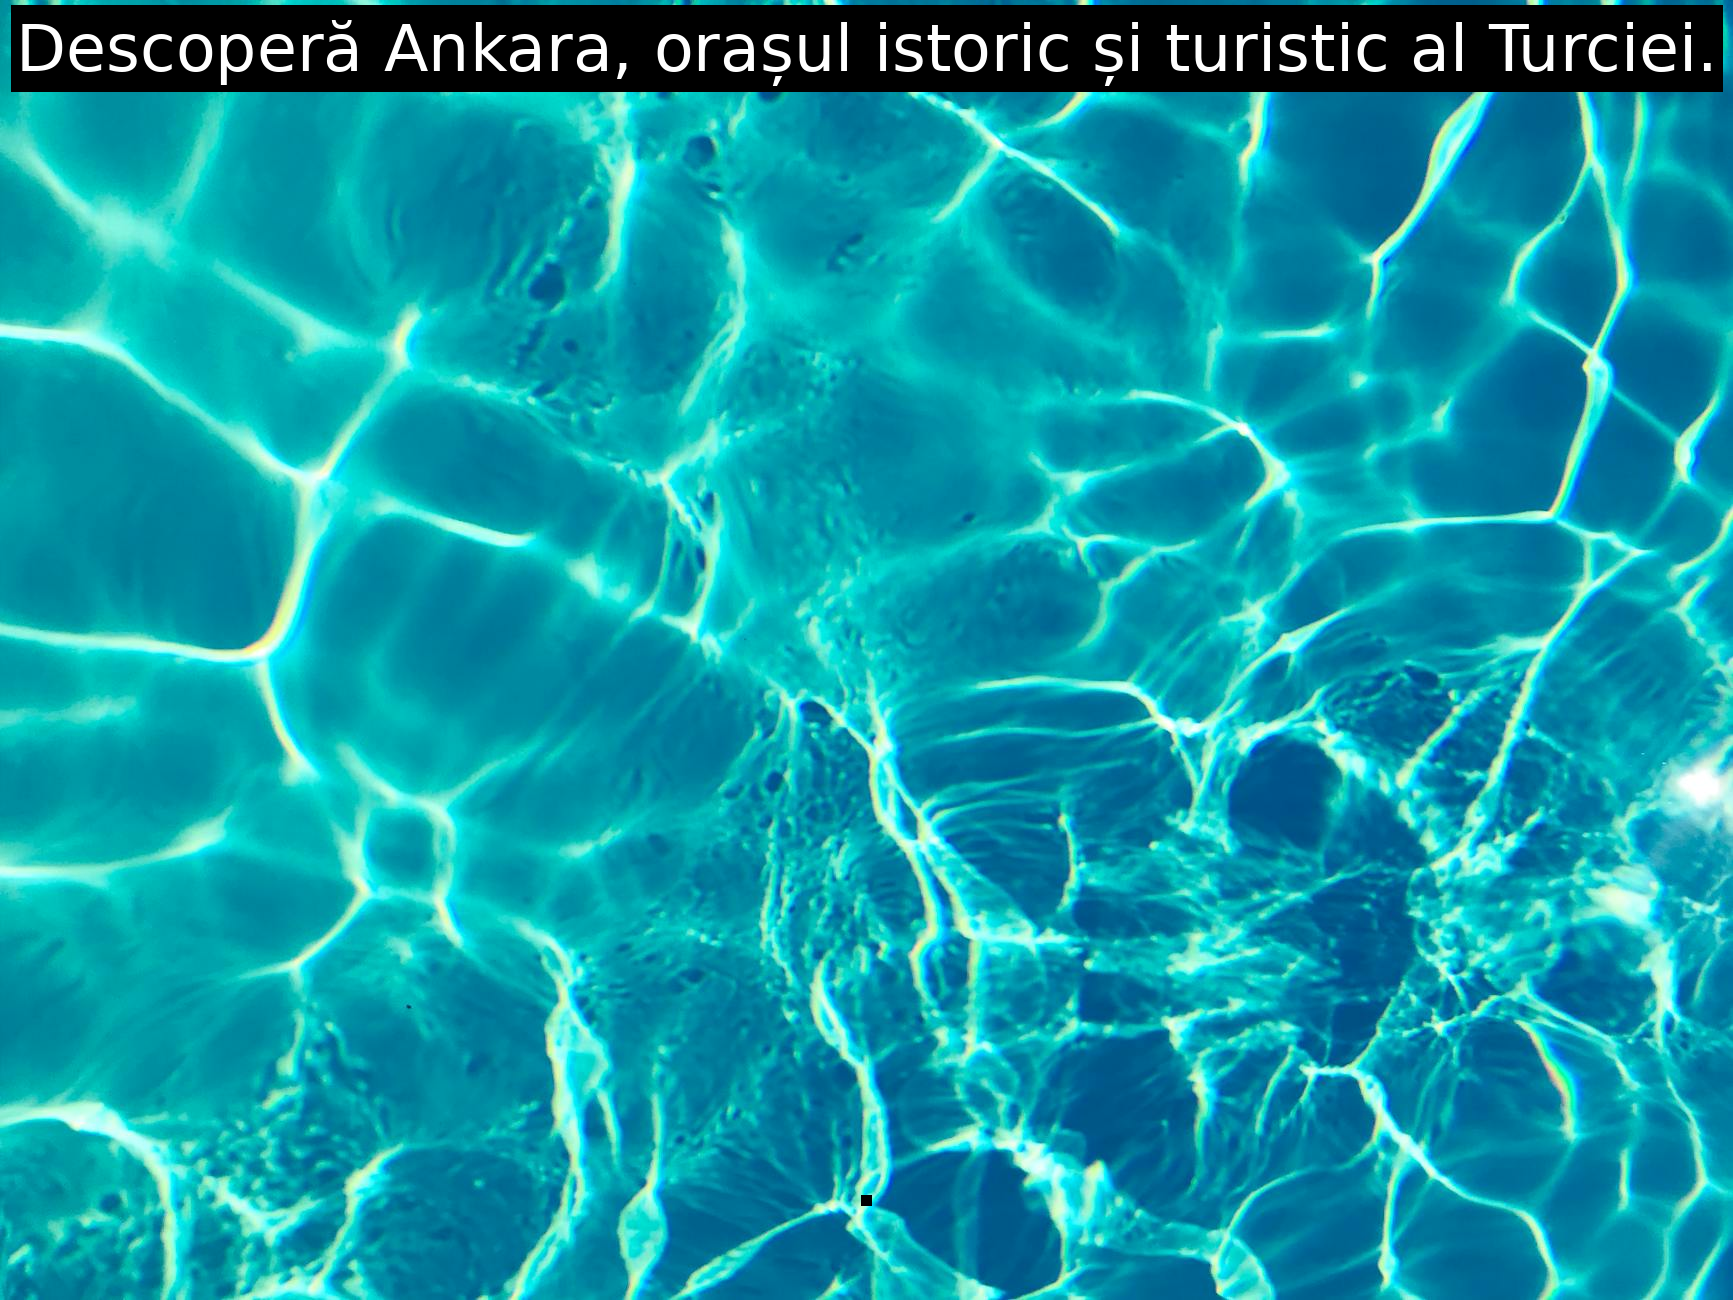 Descoperă Ankara, orașul istoric și turistic al Turciei.